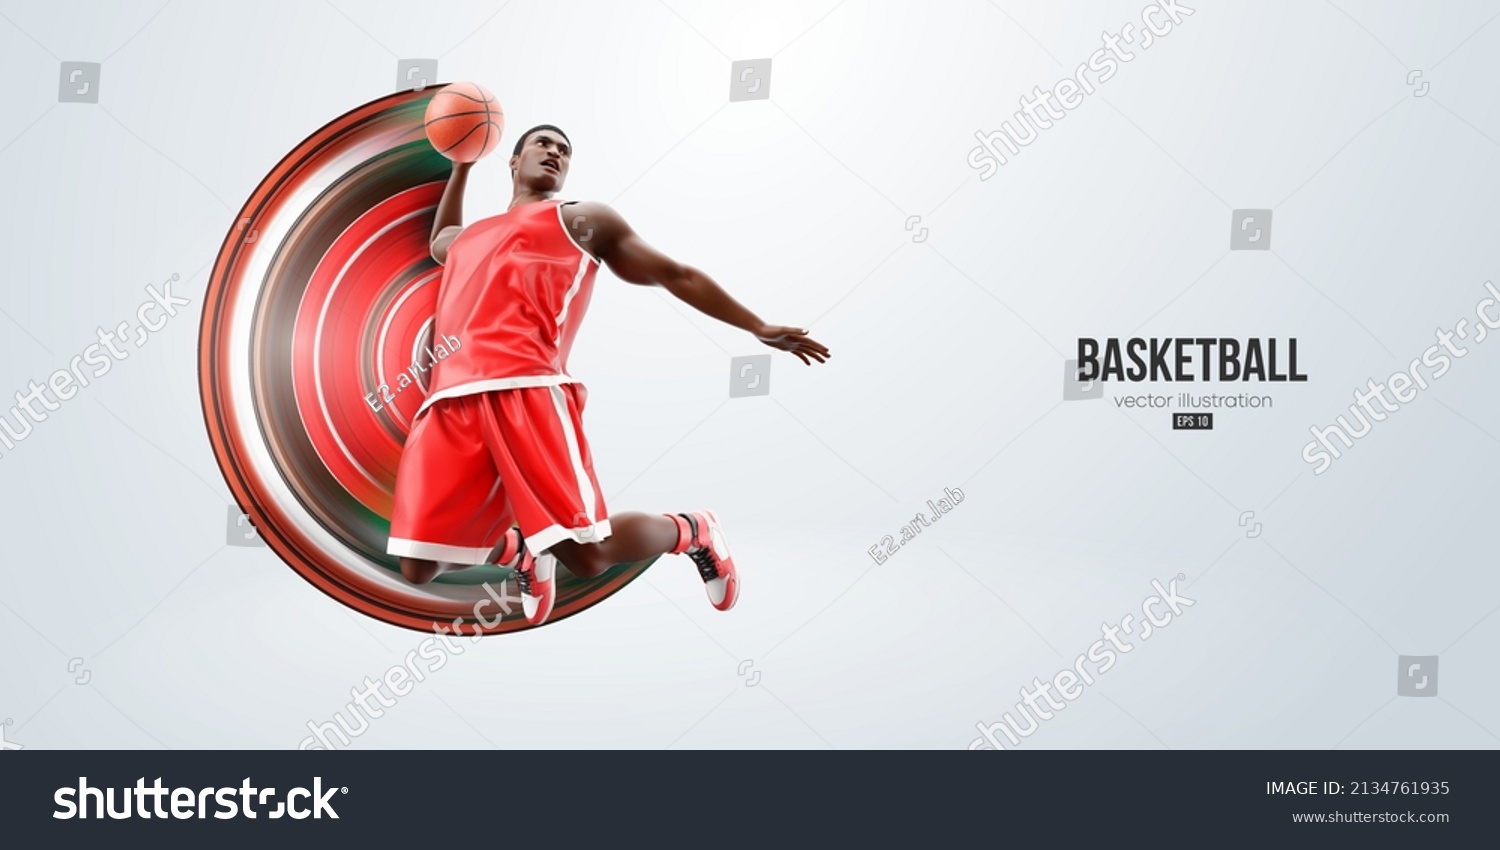 5 228件の バスケット ゴール シルエット のイラスト素材 画像 ベクター画像 Shutterstock